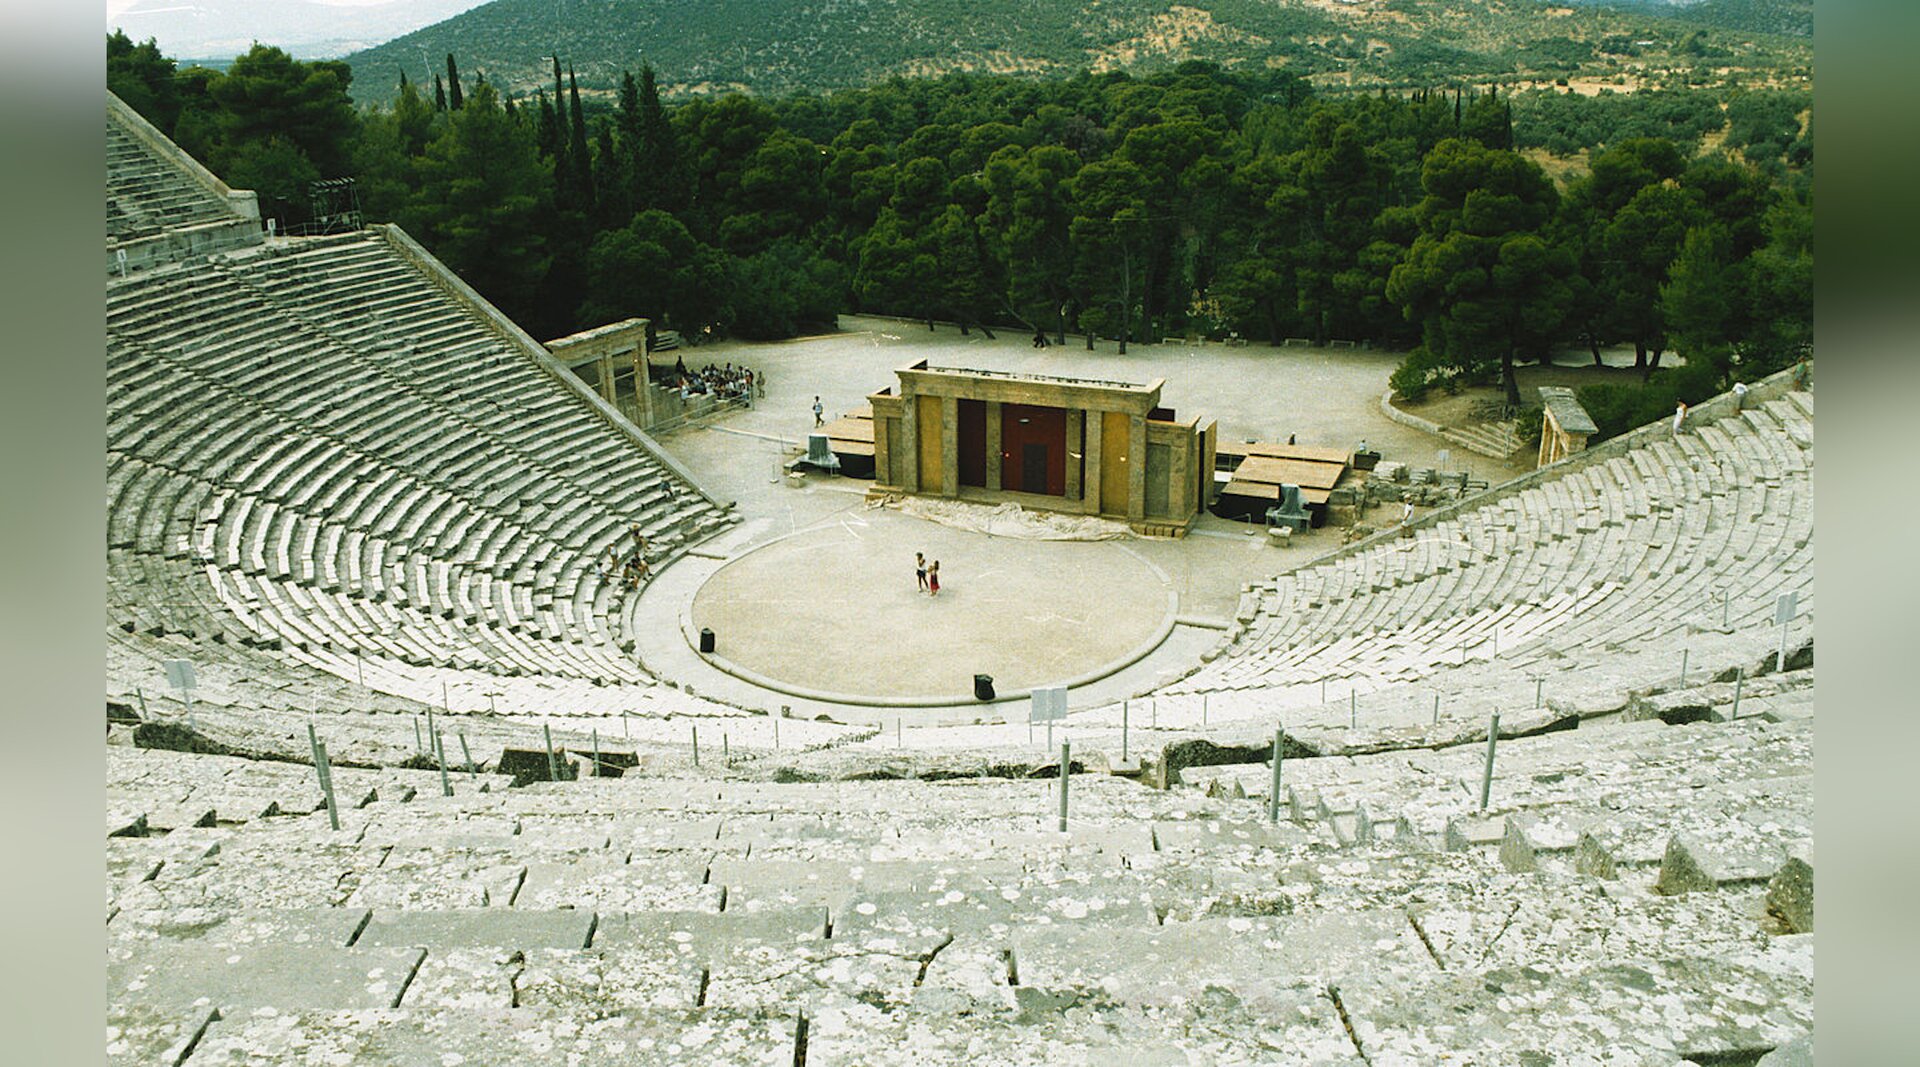 Zdjęcie przedstawia ruiny starożytnego teatru zbudowanego z kamiennych bloków. Widownia znajduje się na zboczach wzniesienia. W tle teatru rośnie las, są zalesione wzgórza